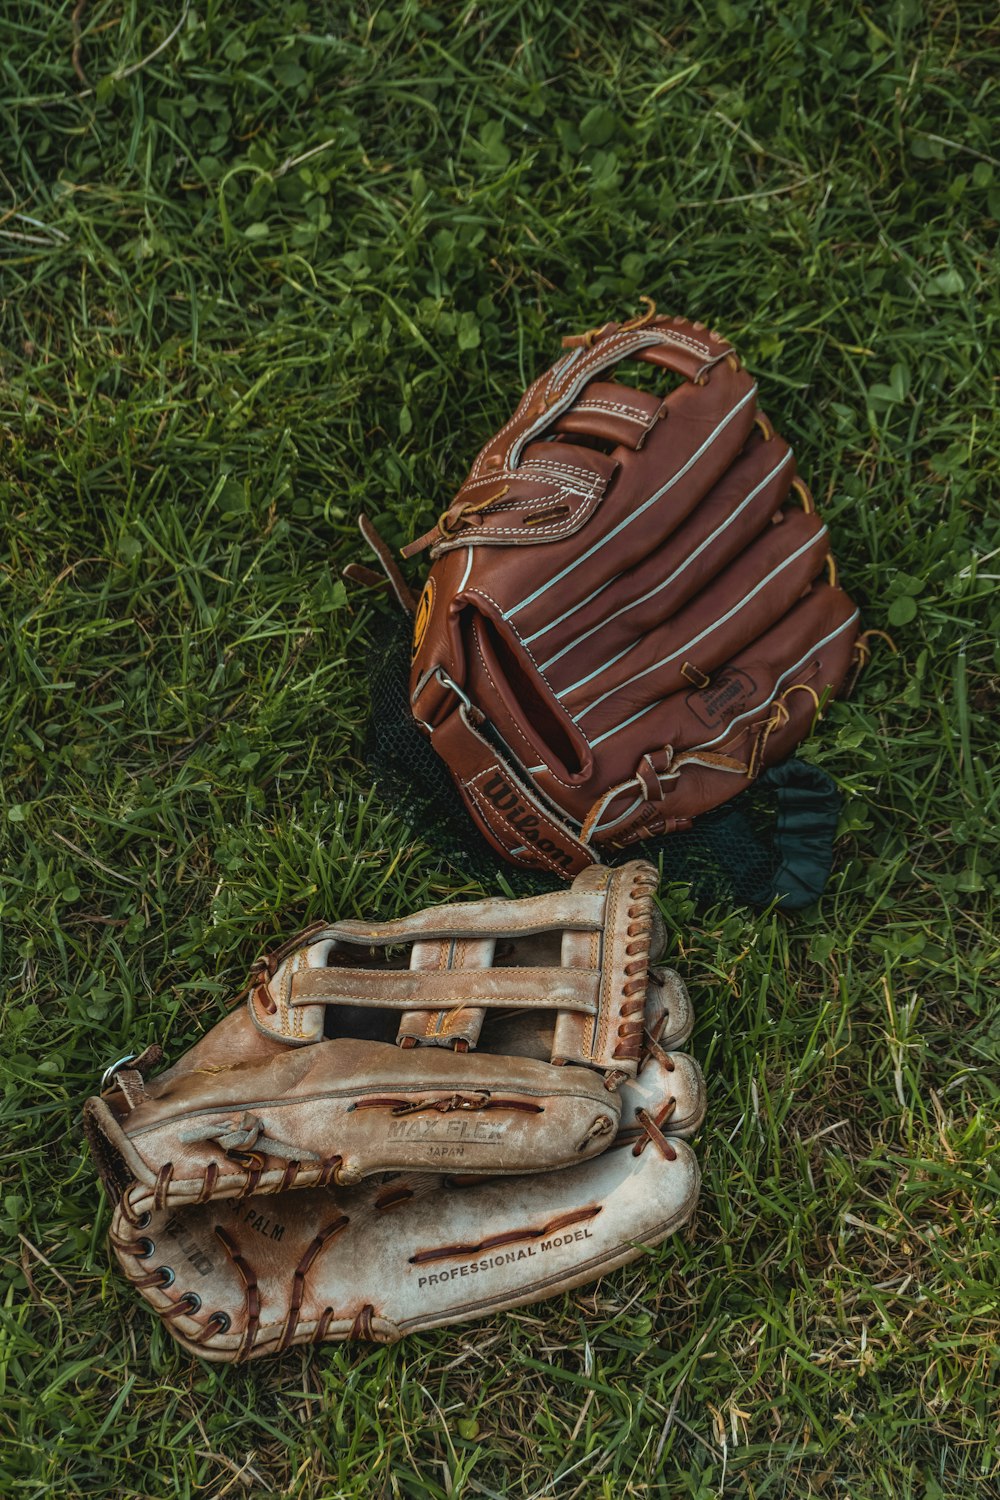 Un guante de béisbol y un guante tirados en el césped